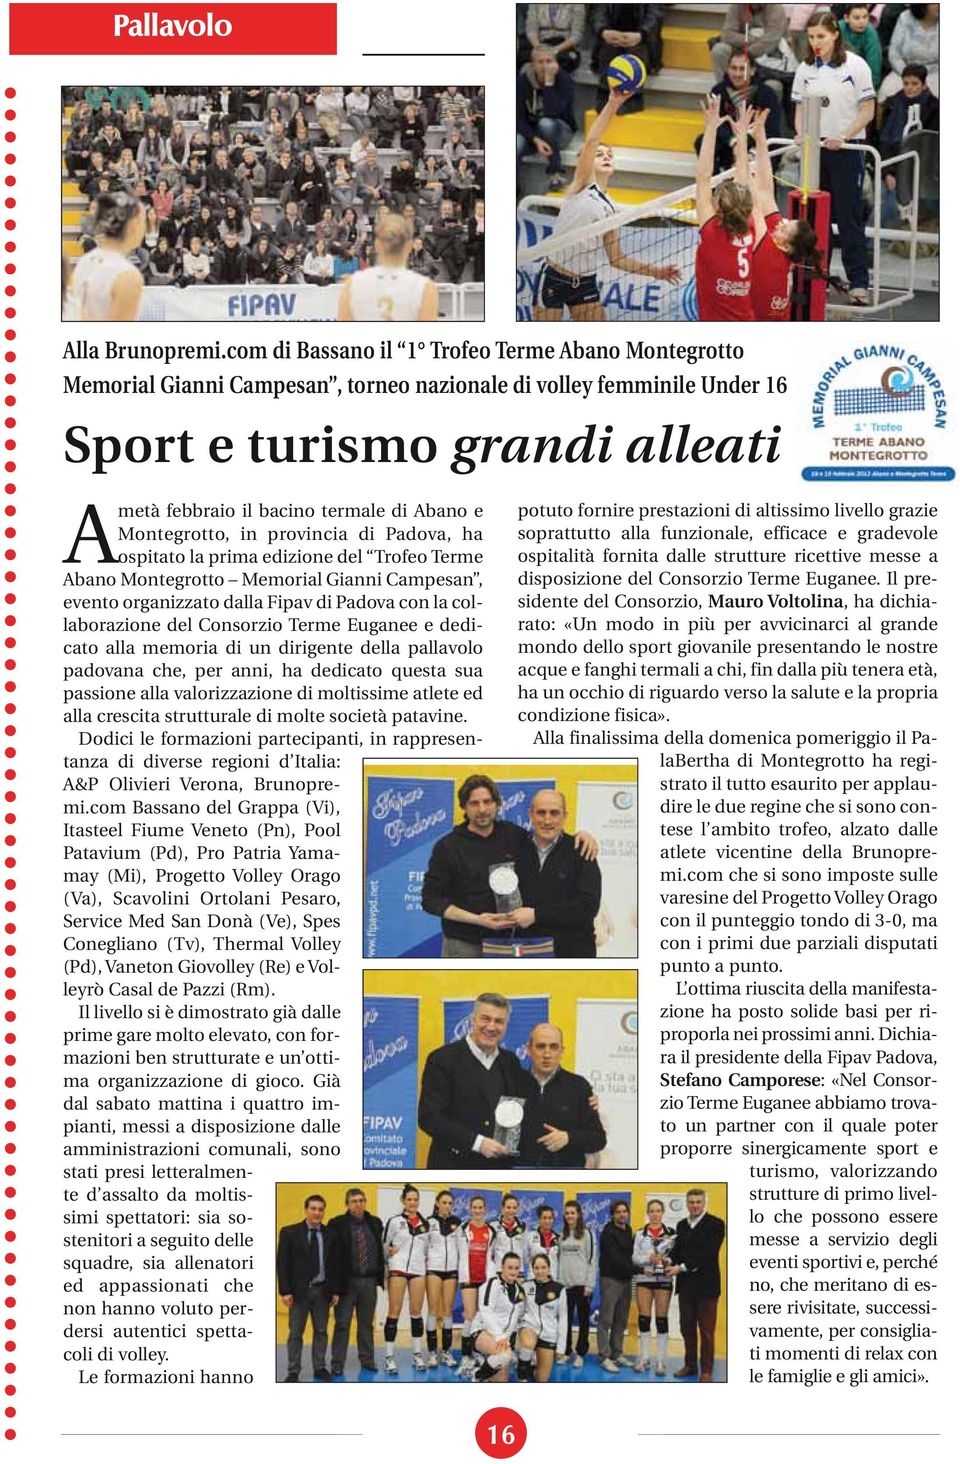 Montegrotto, in provincia di Padova, ha ospitato la prima edizione del Trofeo Terme Abano Montegrotto Memorial Gianni Campesan, evento organizzato dalla Fipav di Padova con la collaborazione del